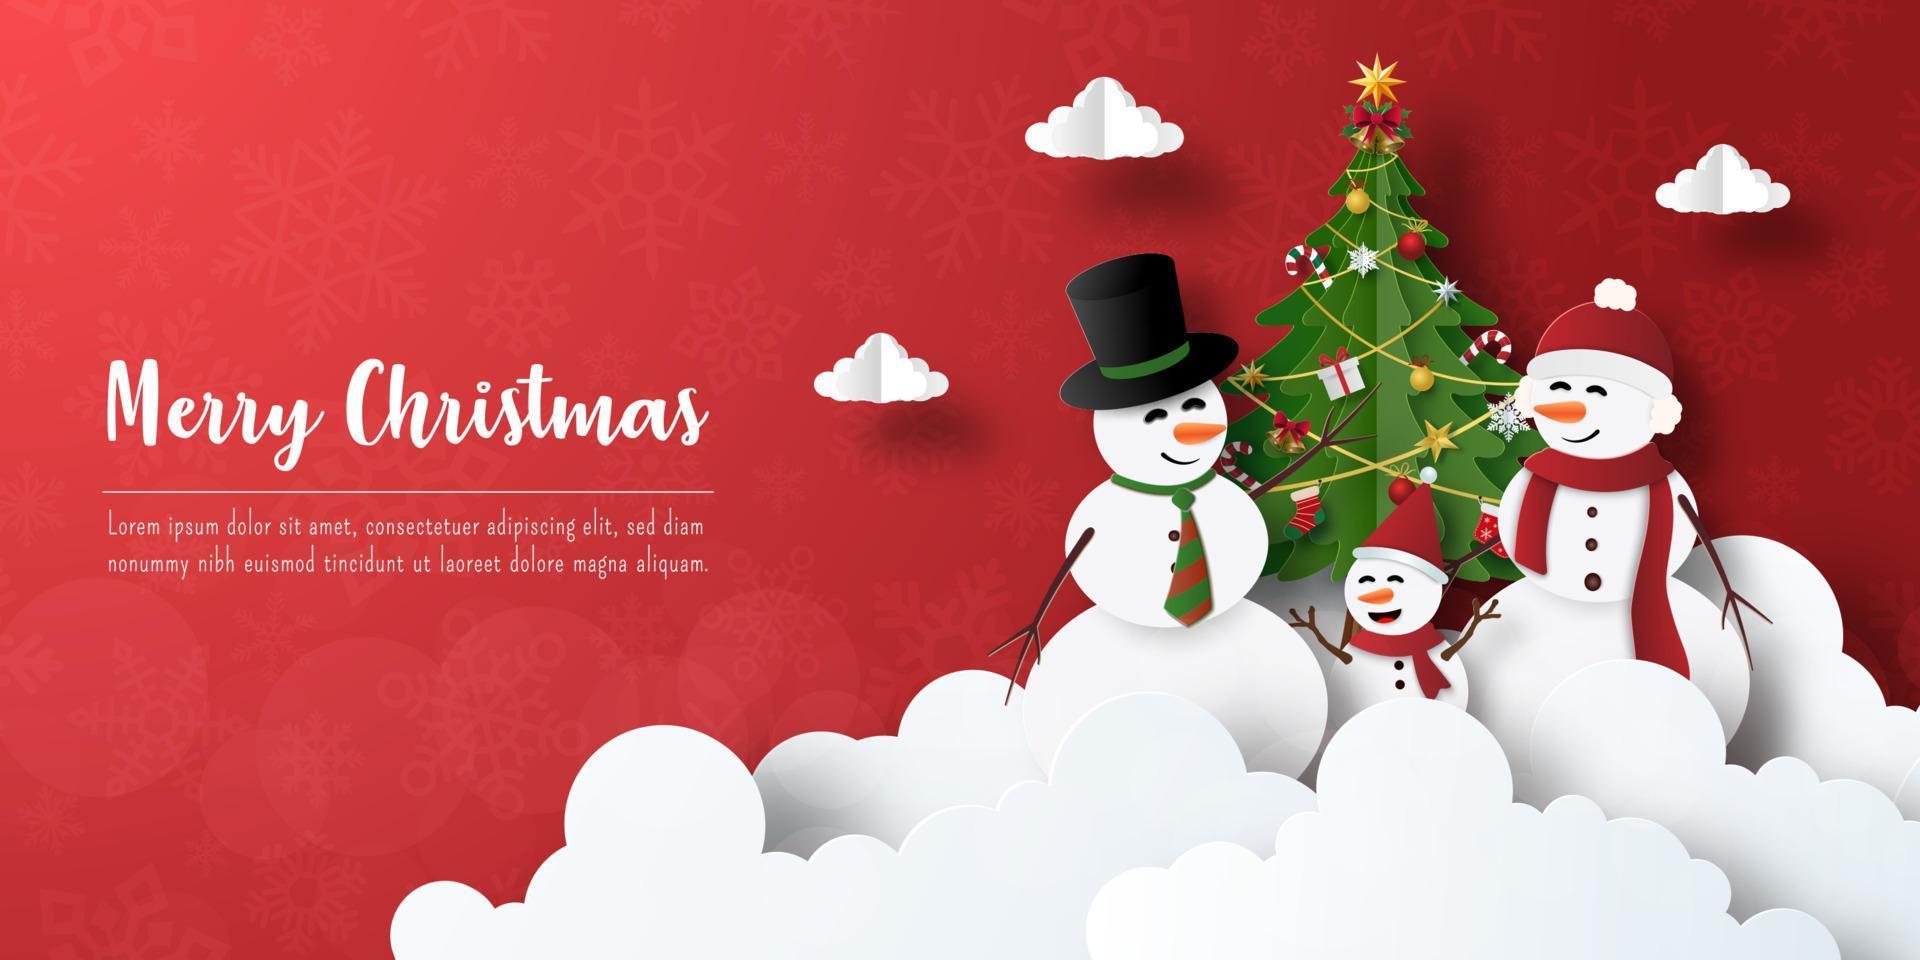 feliz navidad y próspero año nuevo, postal de banner navideño de muñeco de nieve con árbol de navidad vector